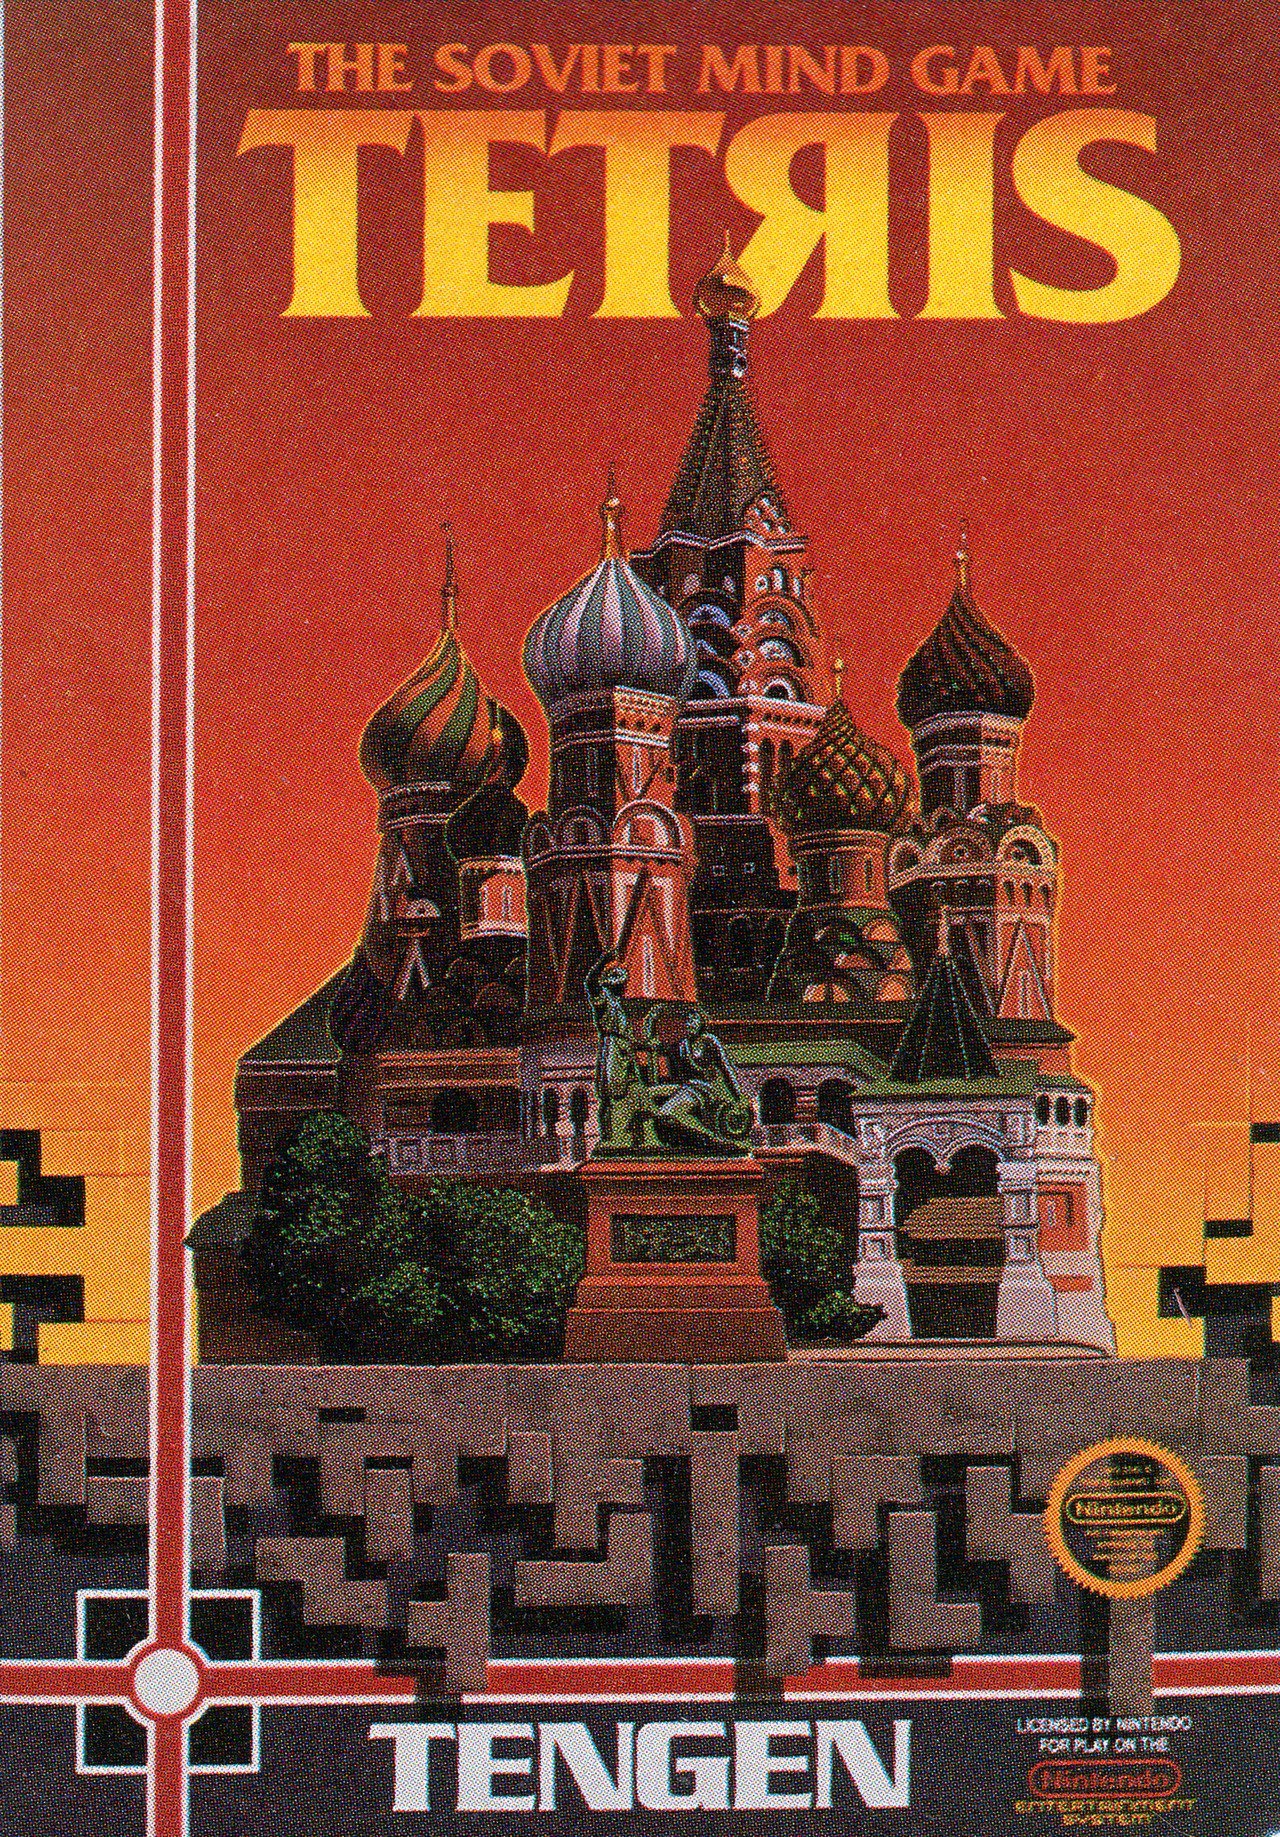 Tengen Tetris licensed cover art.jpg